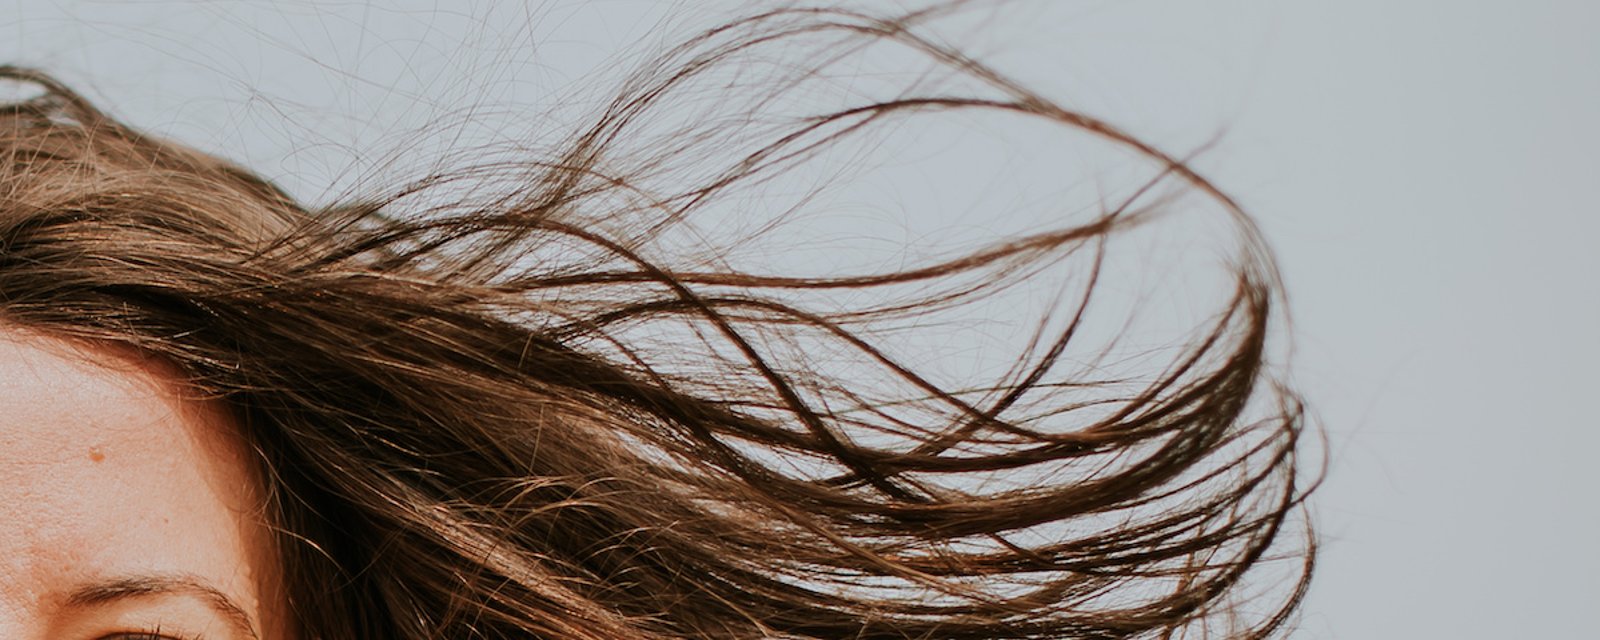 6 trucs pour prendre soin de vos cheveux sans avoir à les couper